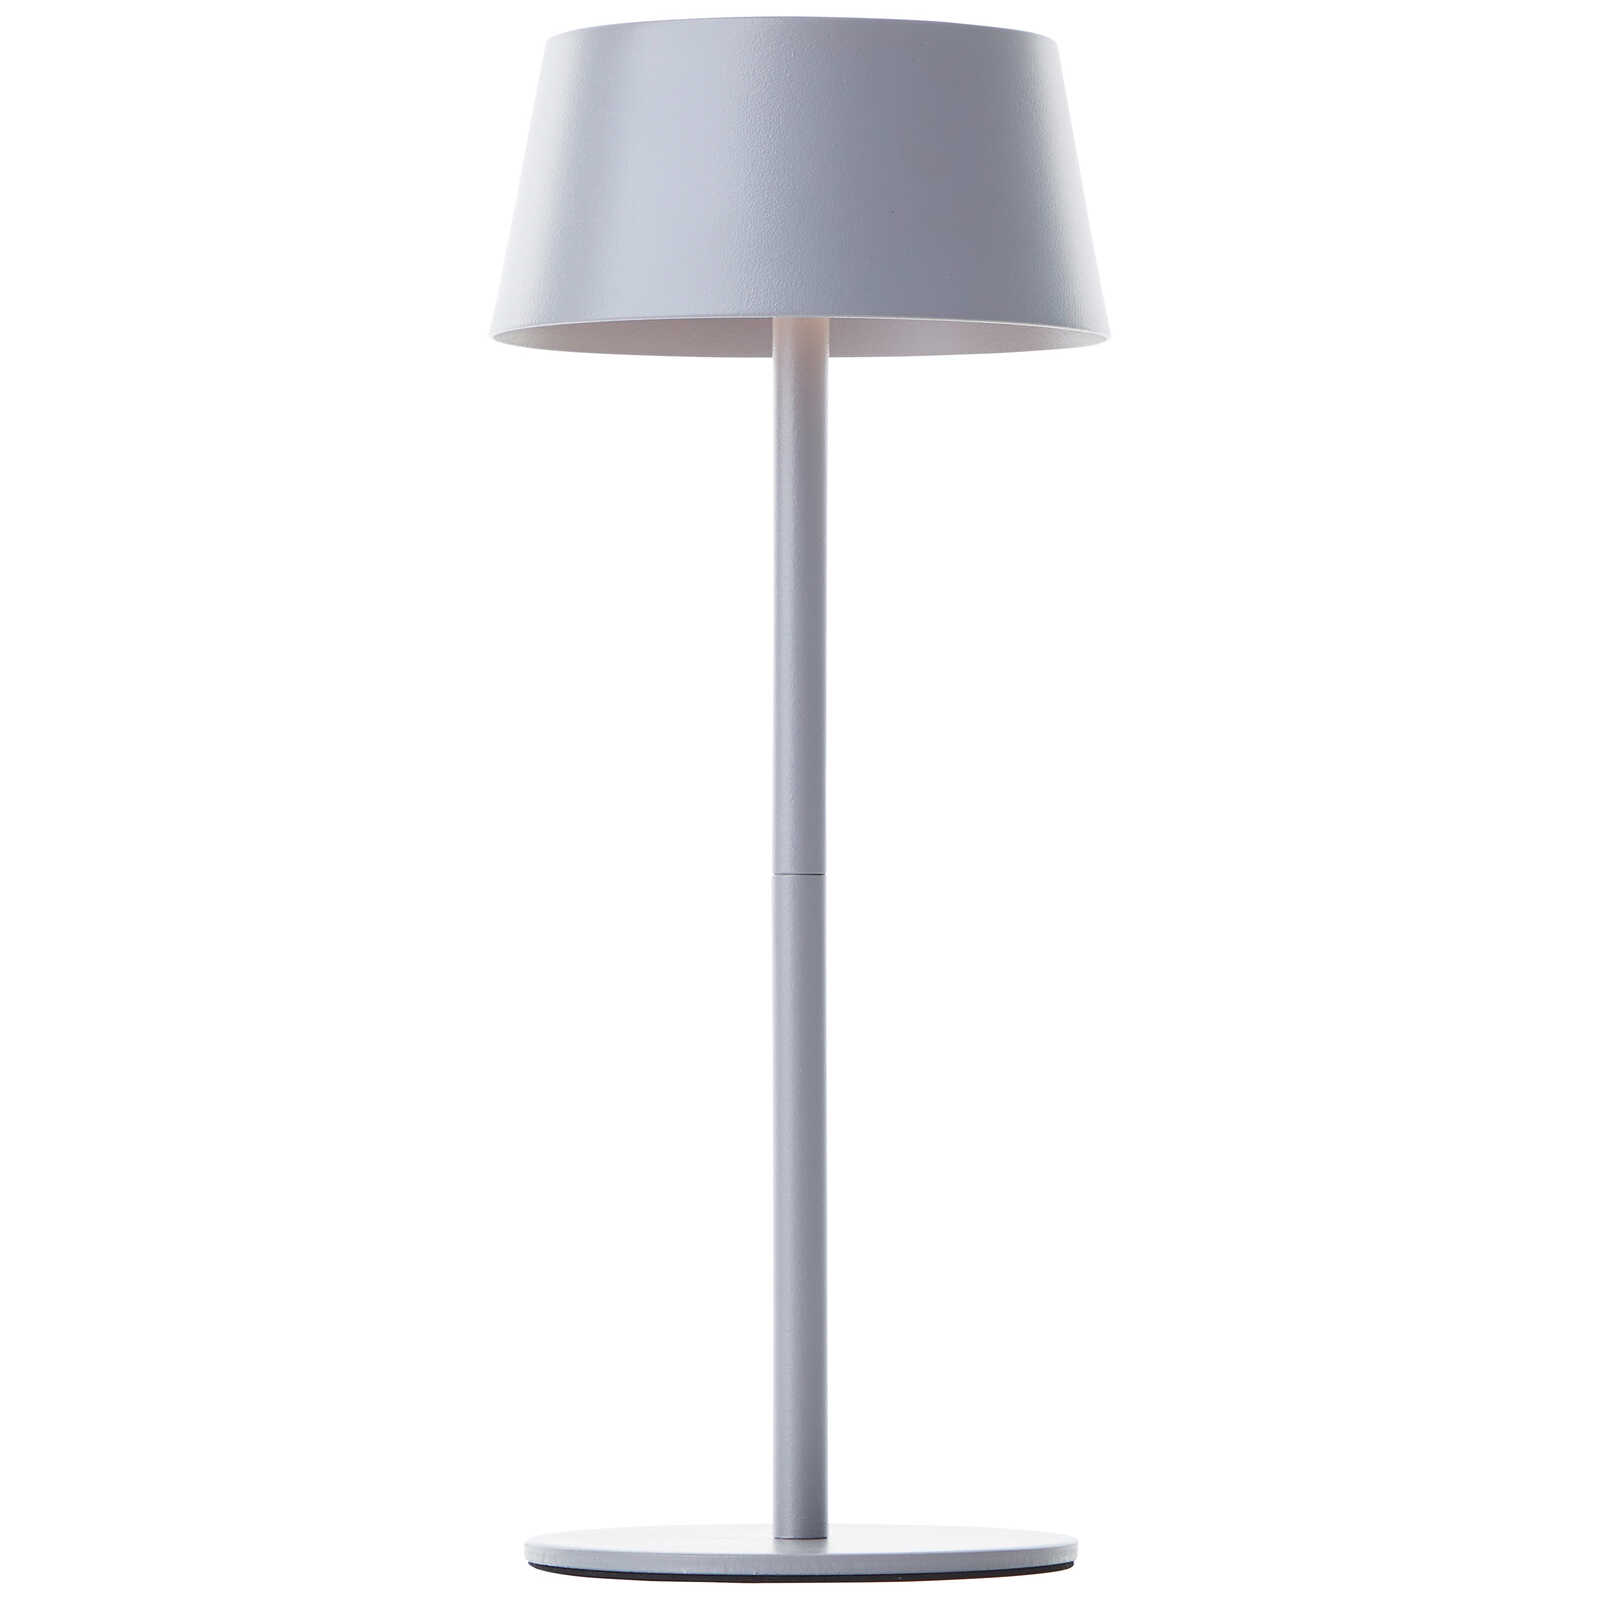             Lampe de table en métal - Outy 2 - Gris
        